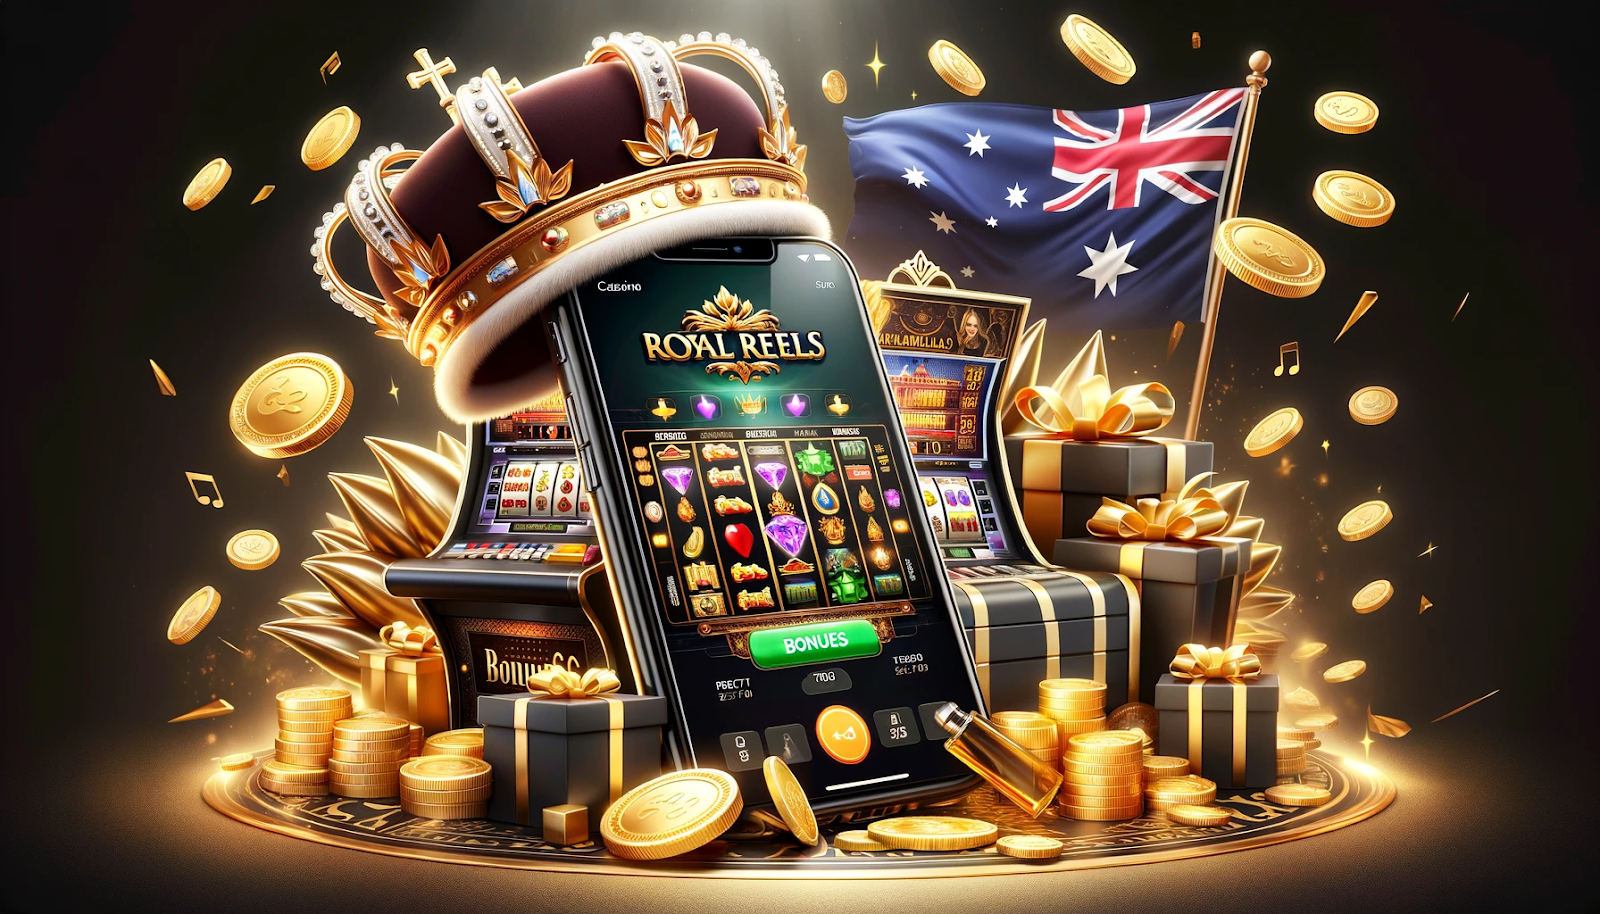 Royal Reels Casino Mobile